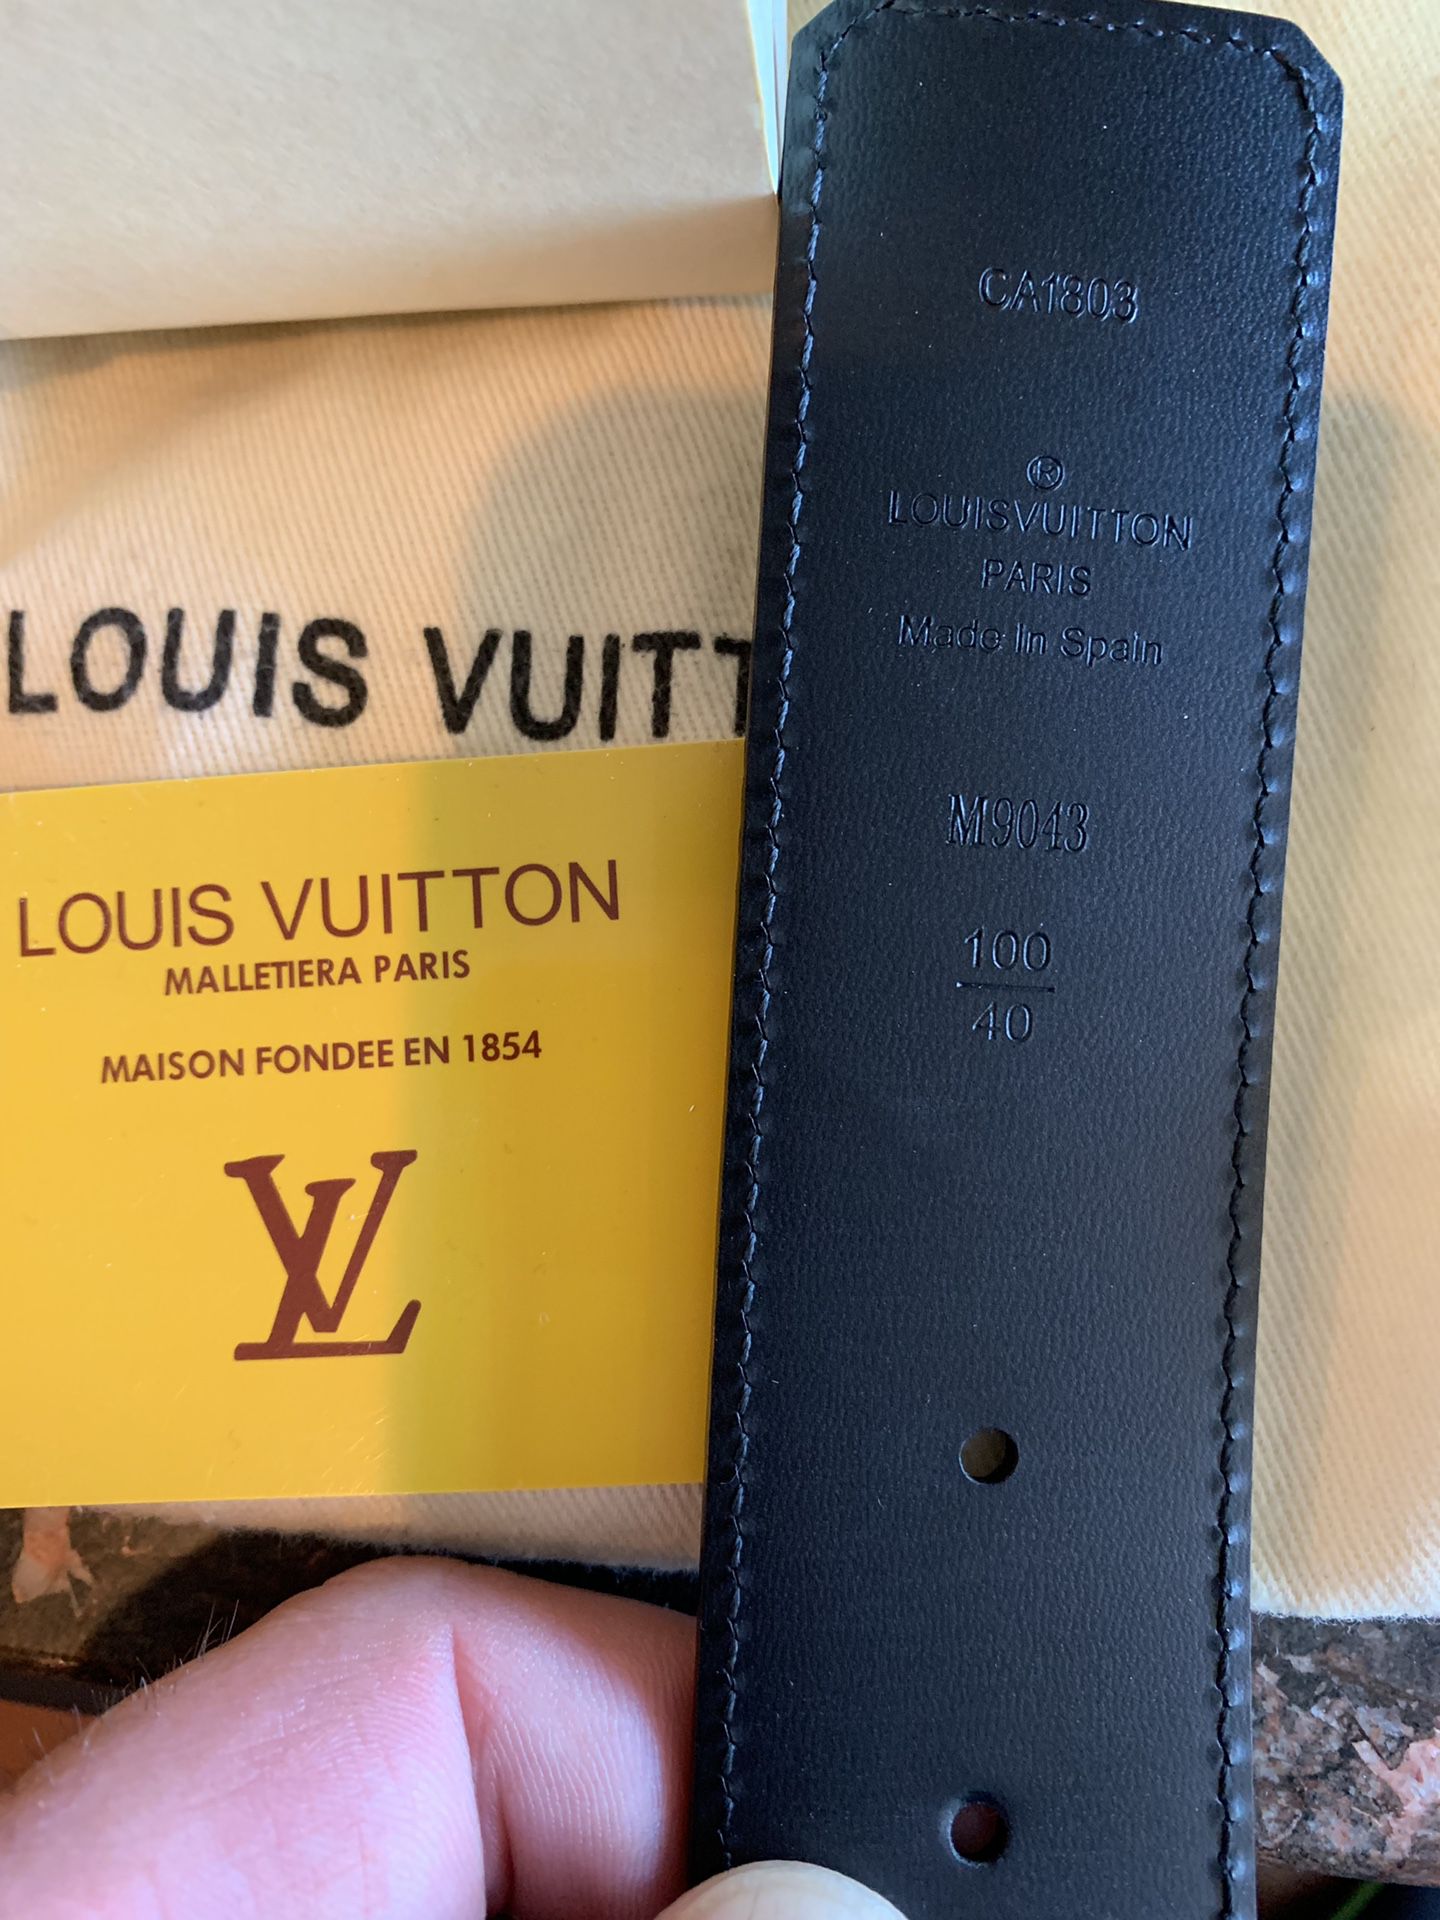 Black Men's Louis Vuitton Belt for Sale in Greenwich, CT - OfferUp